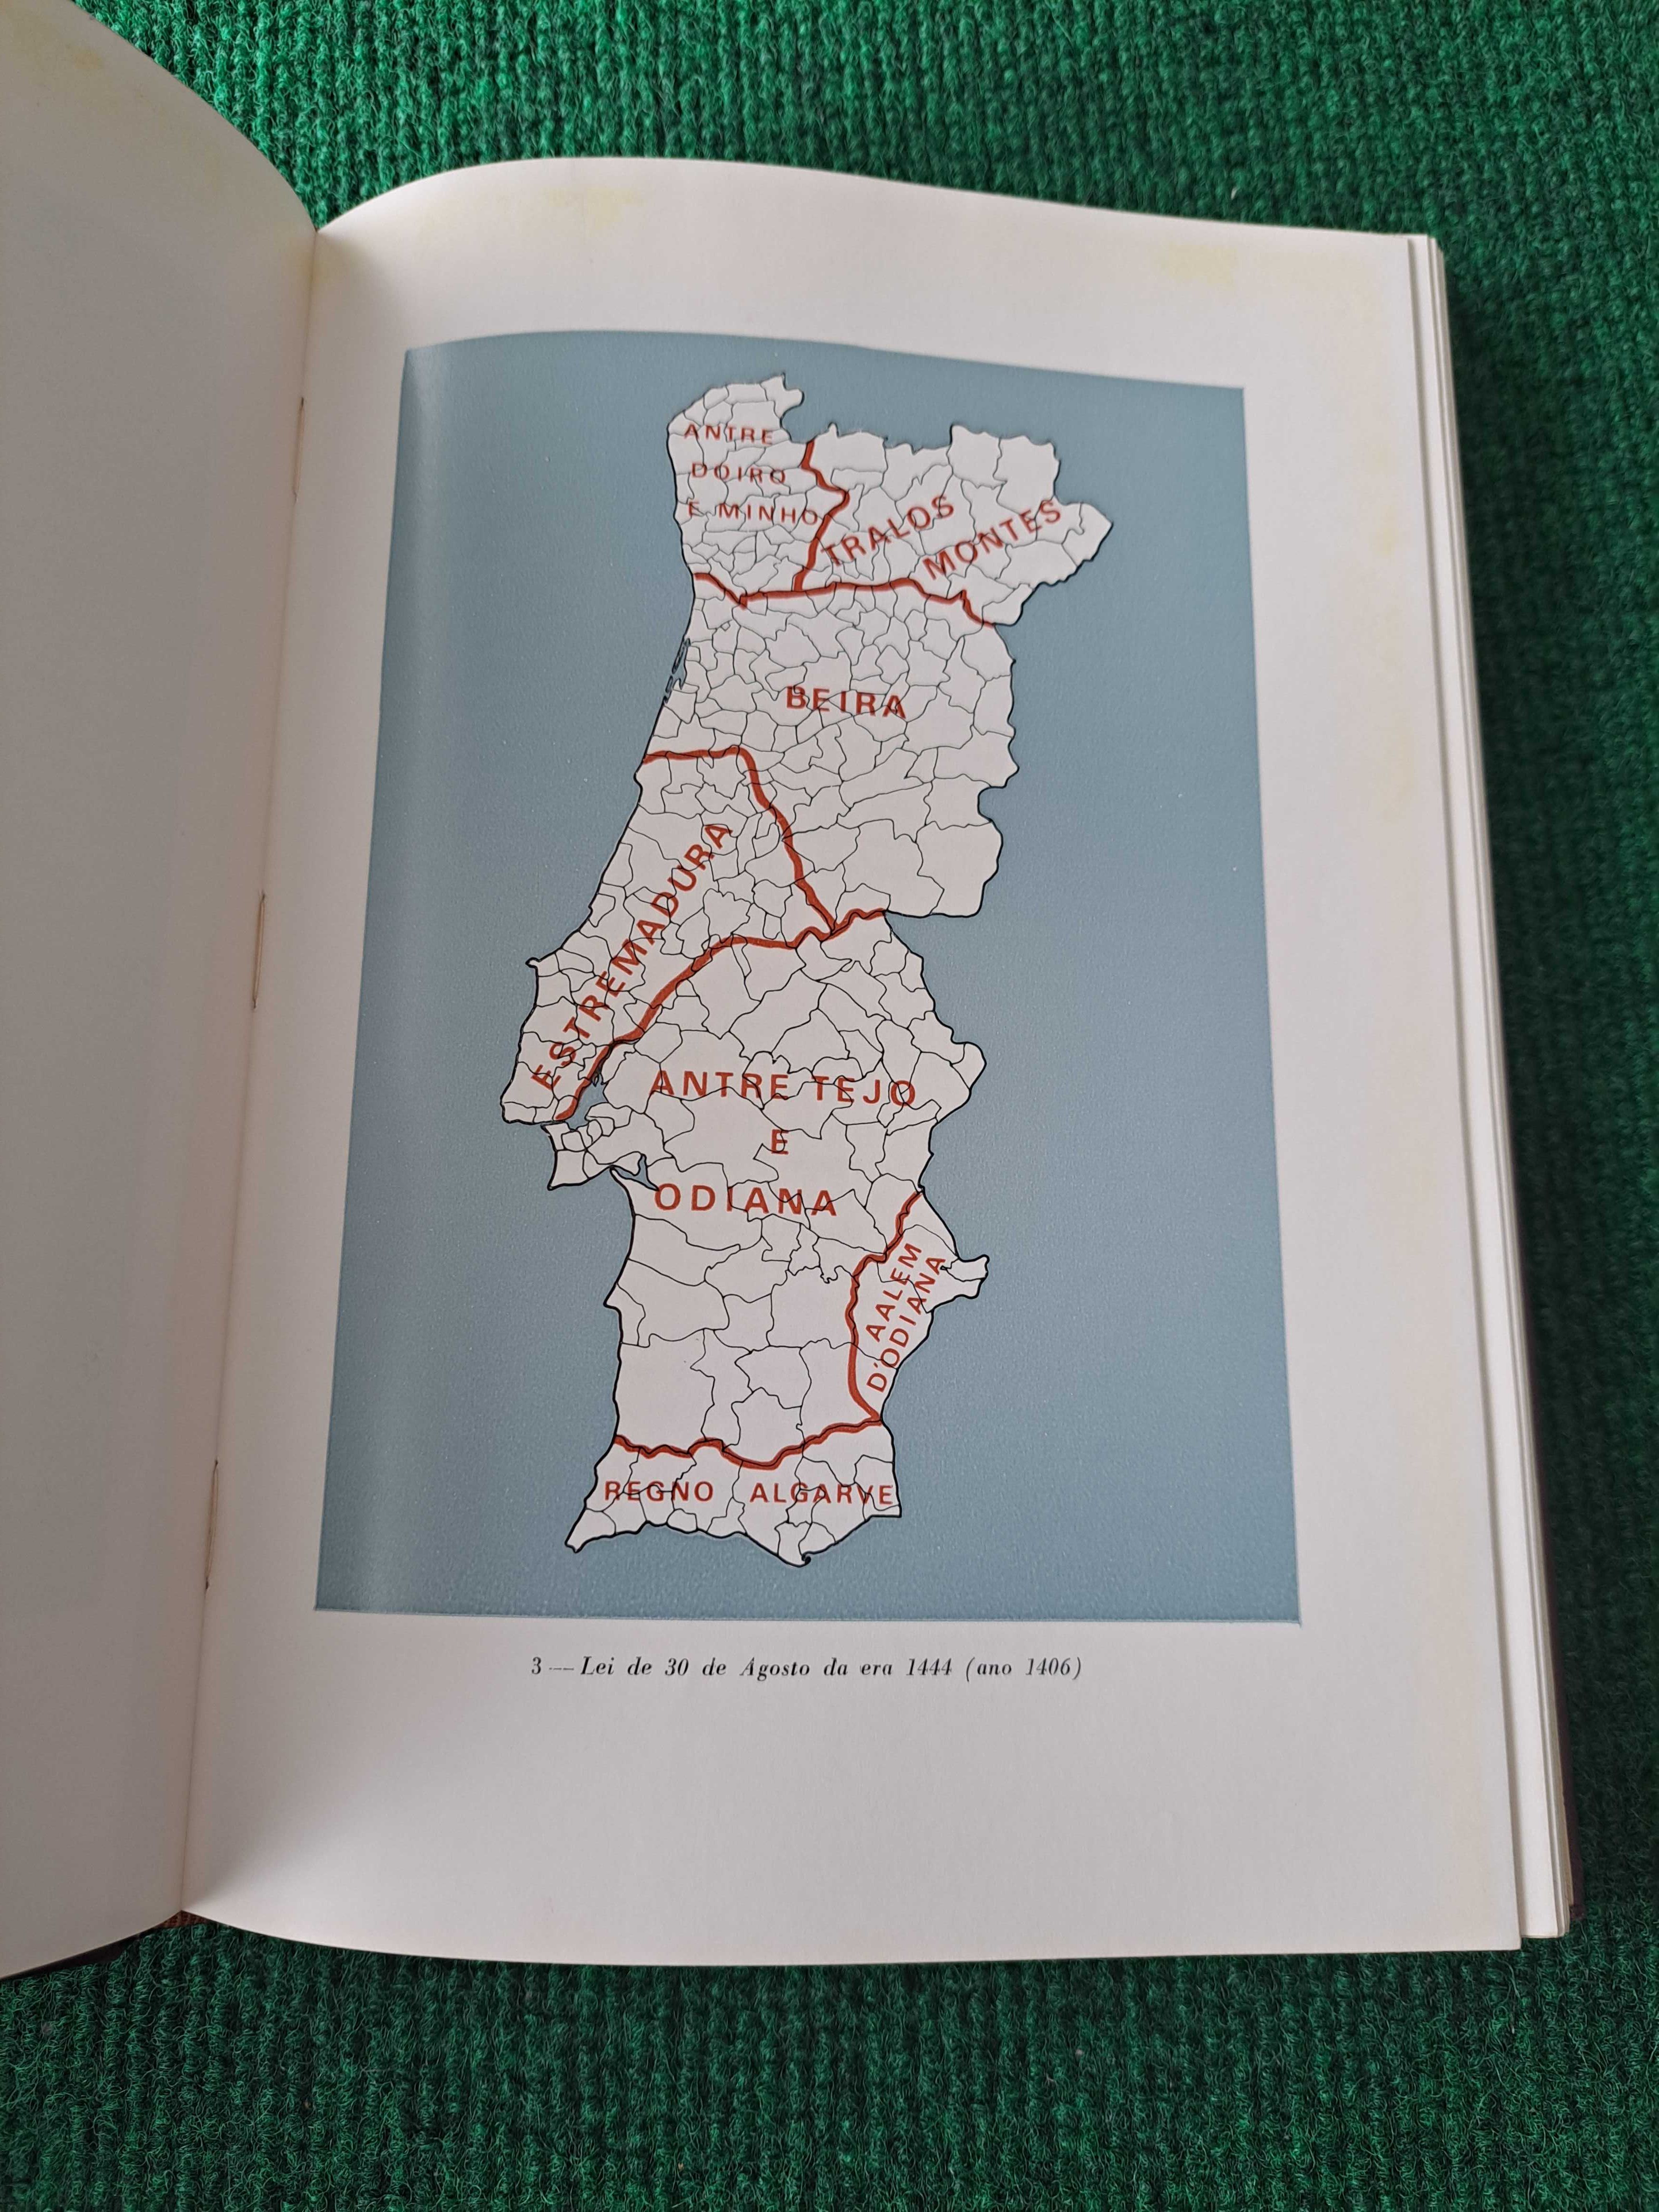 Regiões Homogéneas no Continente Português - C. Caldas / S. Loureiro